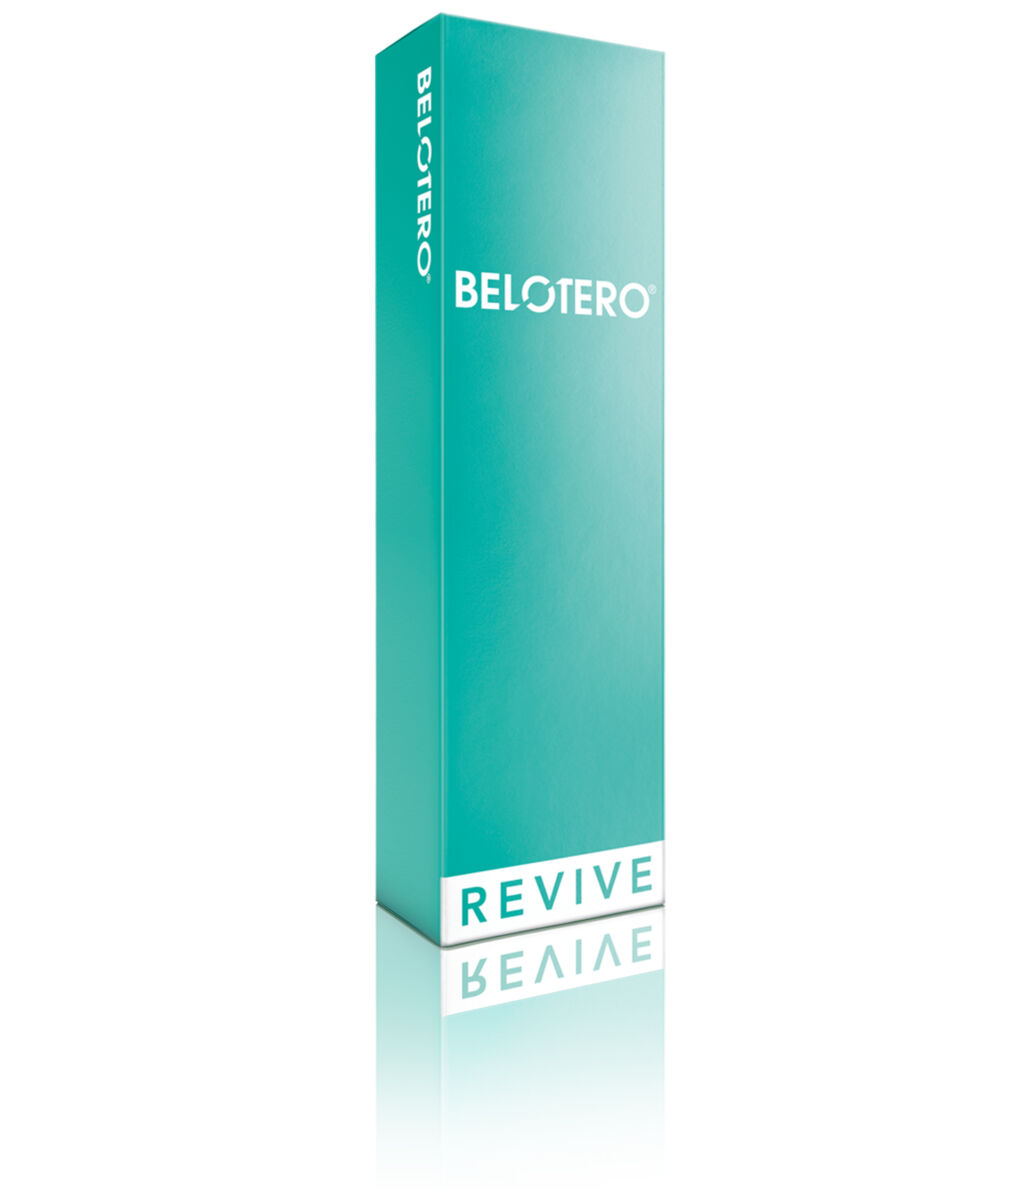 Türkise Verpackung des Belotero® REVIVE-Produkts.